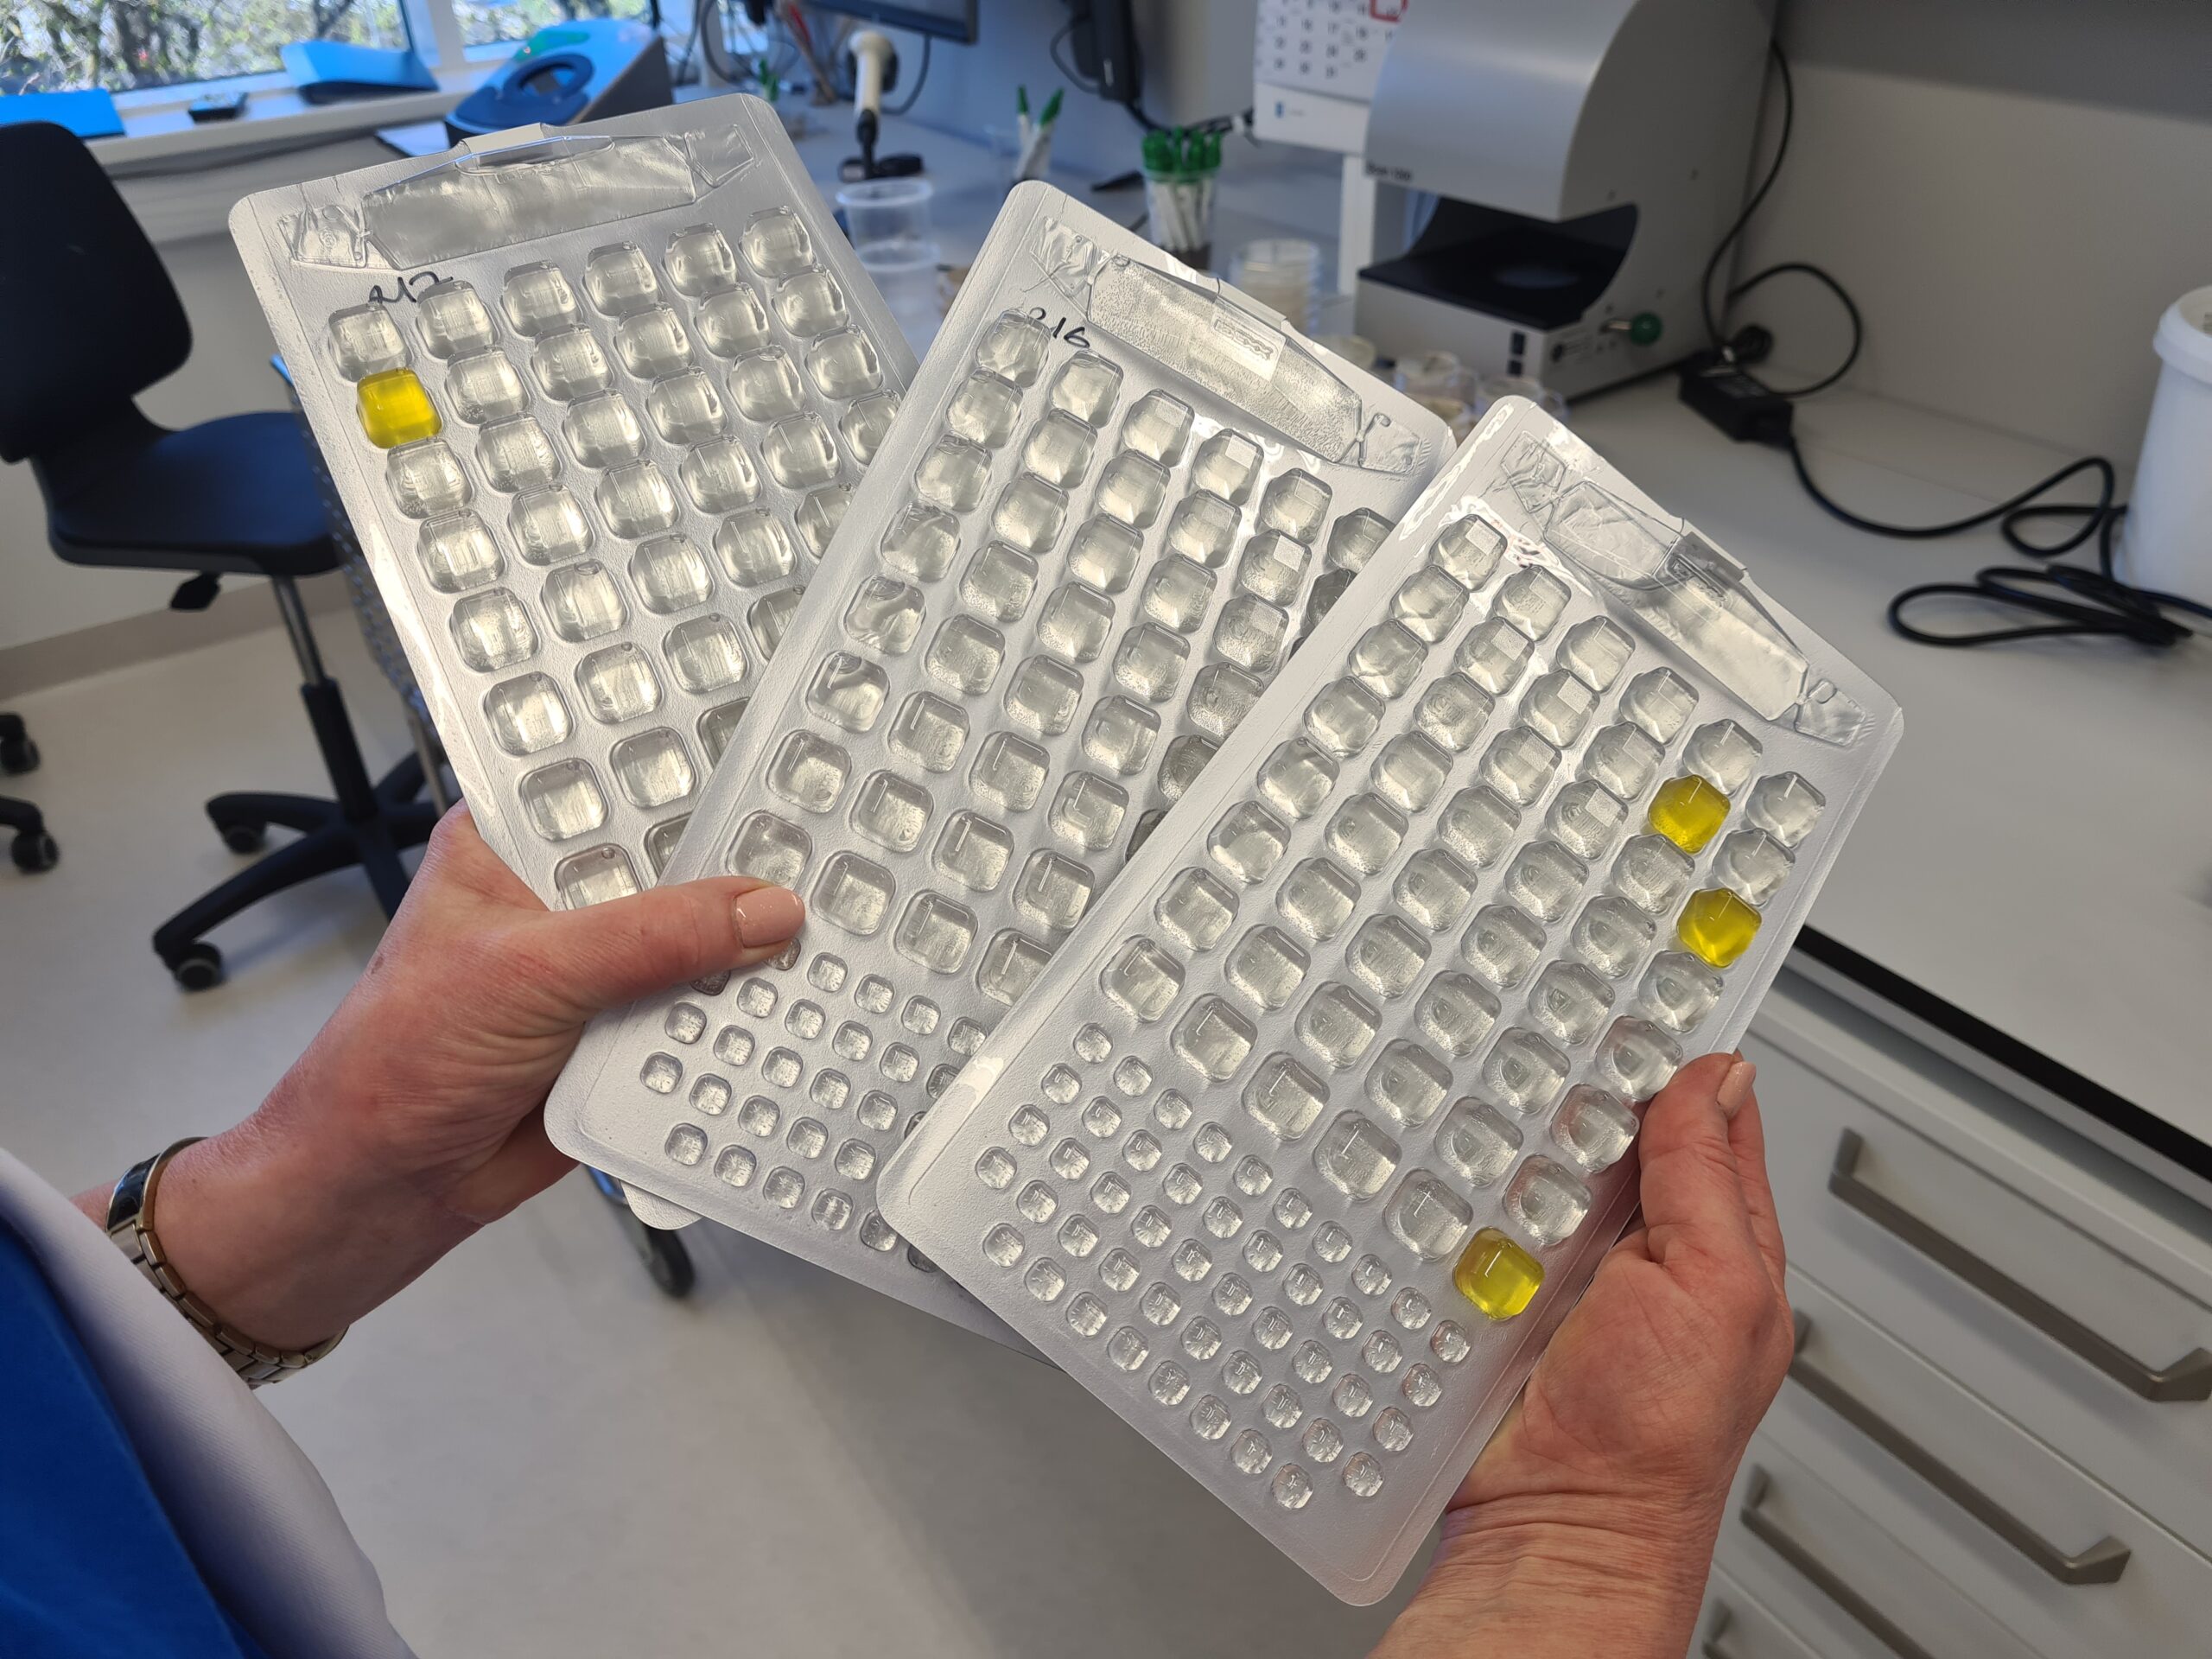 Kressaare joogivees esinenud kolibakteri serotüübi määramiseks viidi täiendavalt läbi PCR-analüüs, mille tulemusel on tegemist E.coli vormiga, mis ei ole kõige toksilisem tüüp, kuid langeb kokku patsientidel esinenud sümptomitega. Foto: Terviseamet